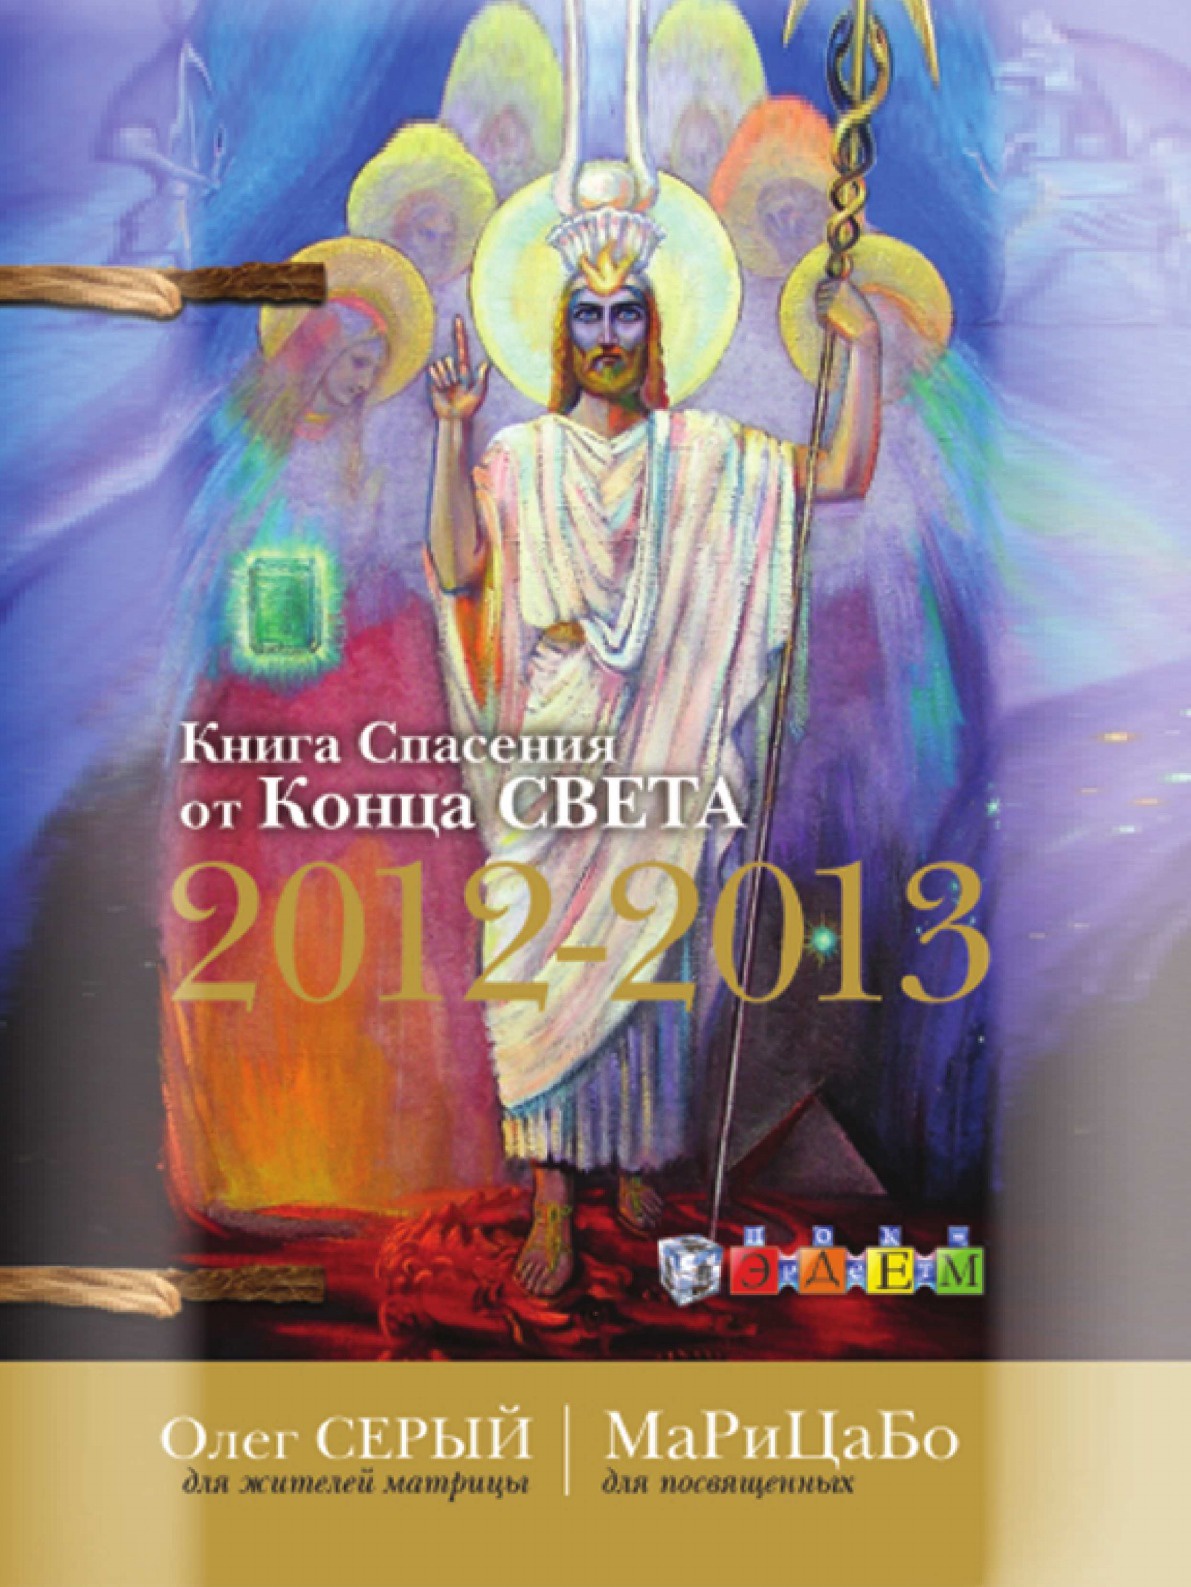 Книга Спасения от Конца Света 2012-2013. полная версия